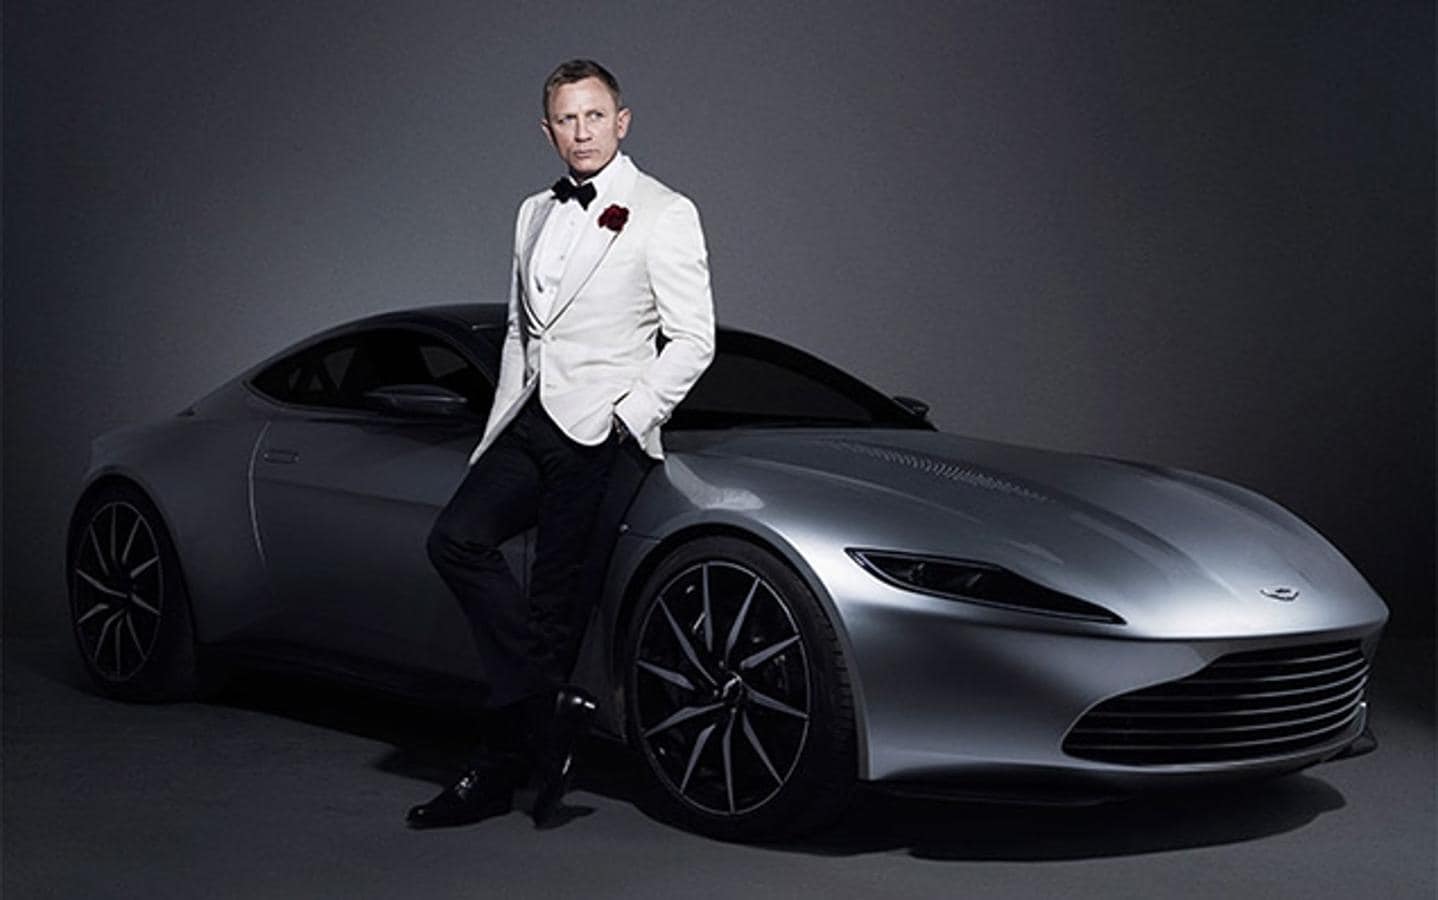 El Aston Martin DB10 que utilizó Daniel Craig en James Bond. Coches de lujo, relojes y trajes caros, las 24 películas protagonizadas por el Agente 007 mostraron piezas de lujo en cada escena, ahora los icónicos objetos tienen un valor añadido, forman parte de la historia del cine. El Aston Martin que conducía Craig en «Spectre» se vendió por 2.721.349 €